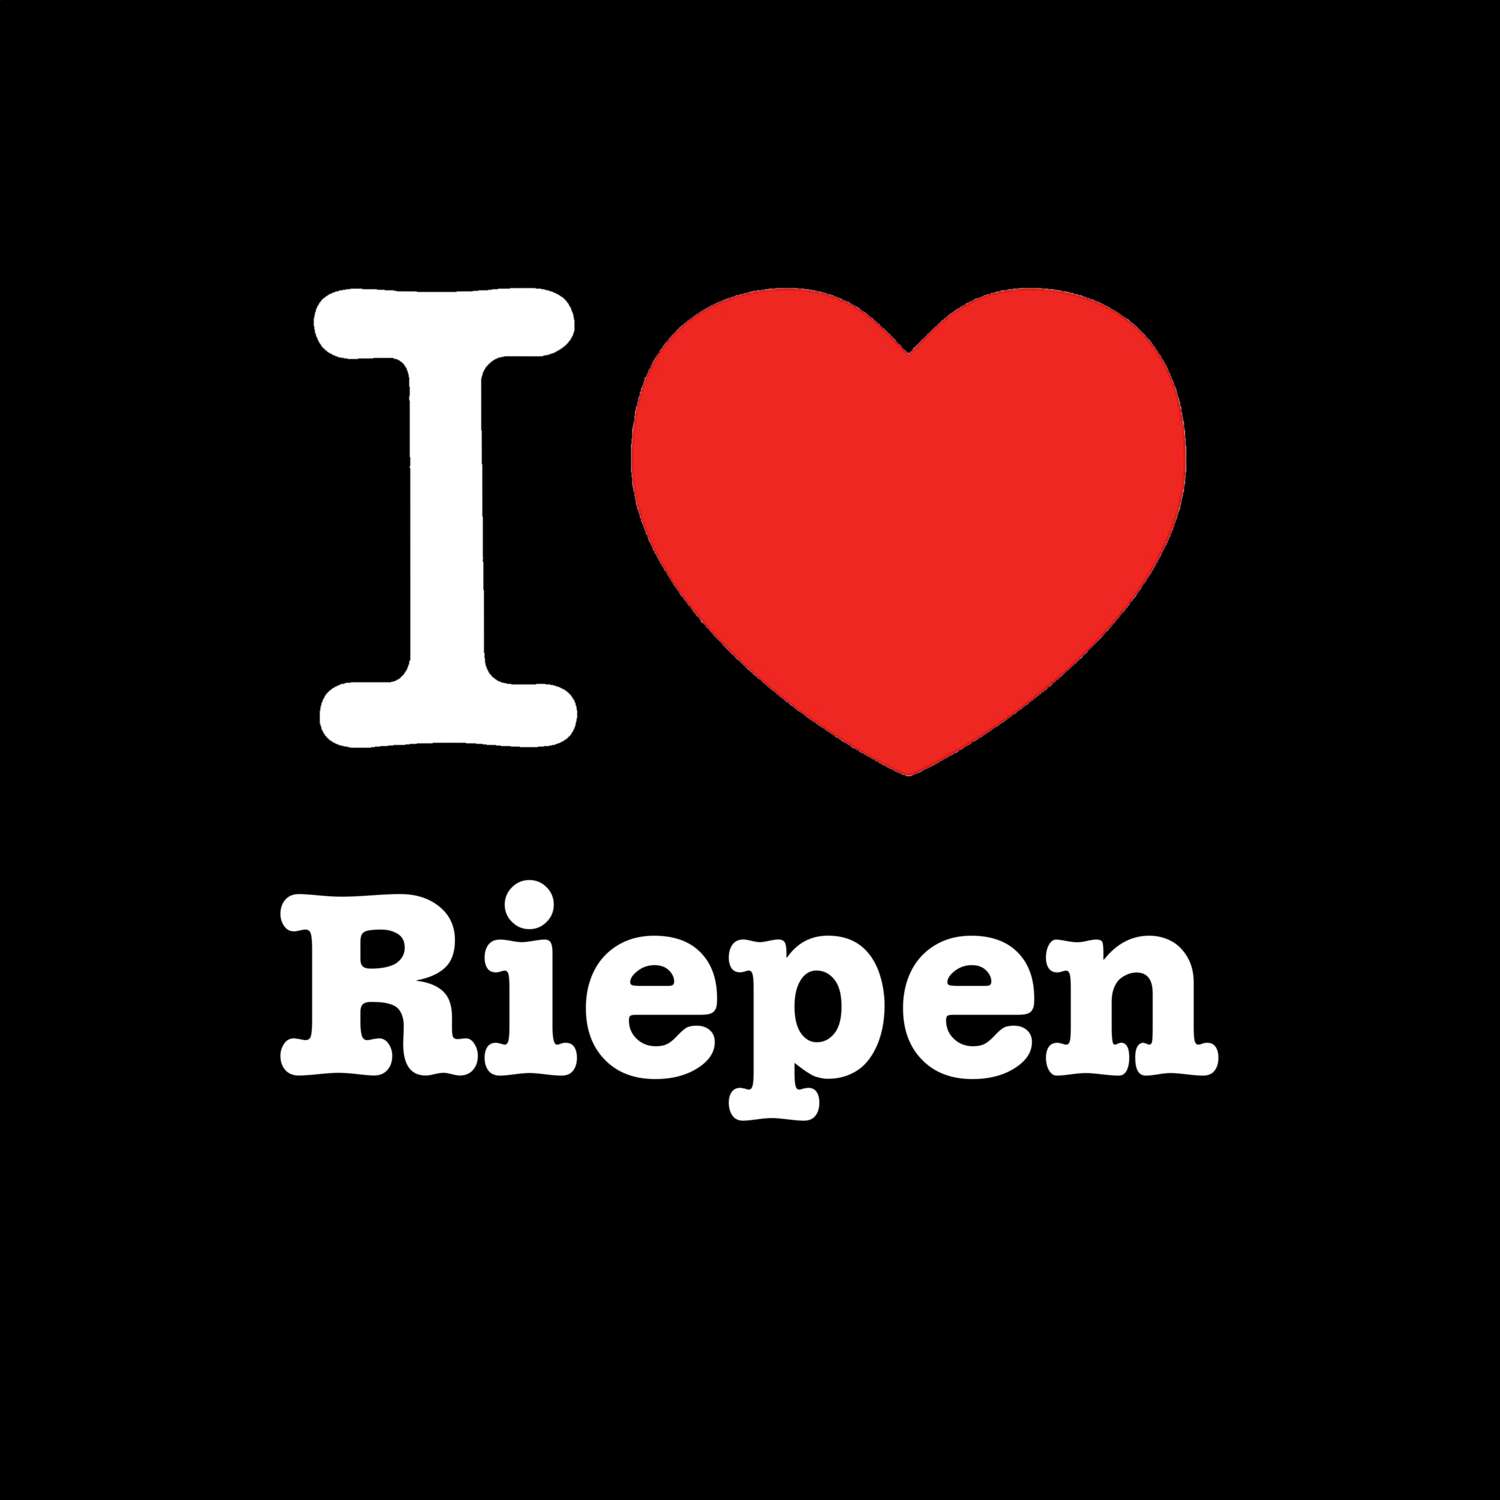 Riepen T-Shirt »I love«